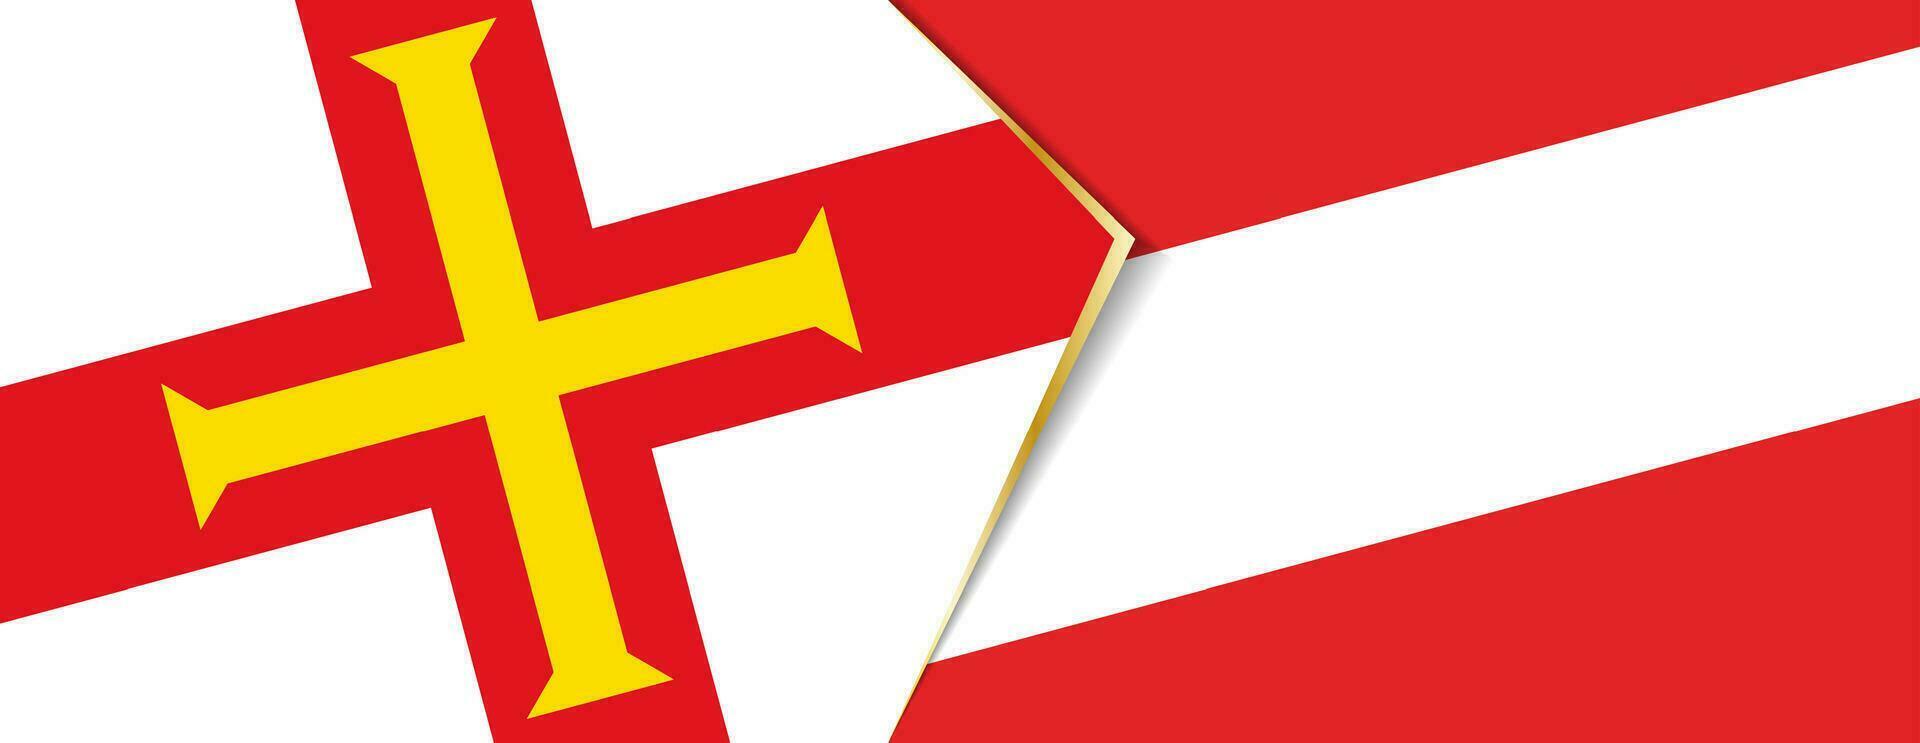 guernsey y Austria banderas, dos vector banderas